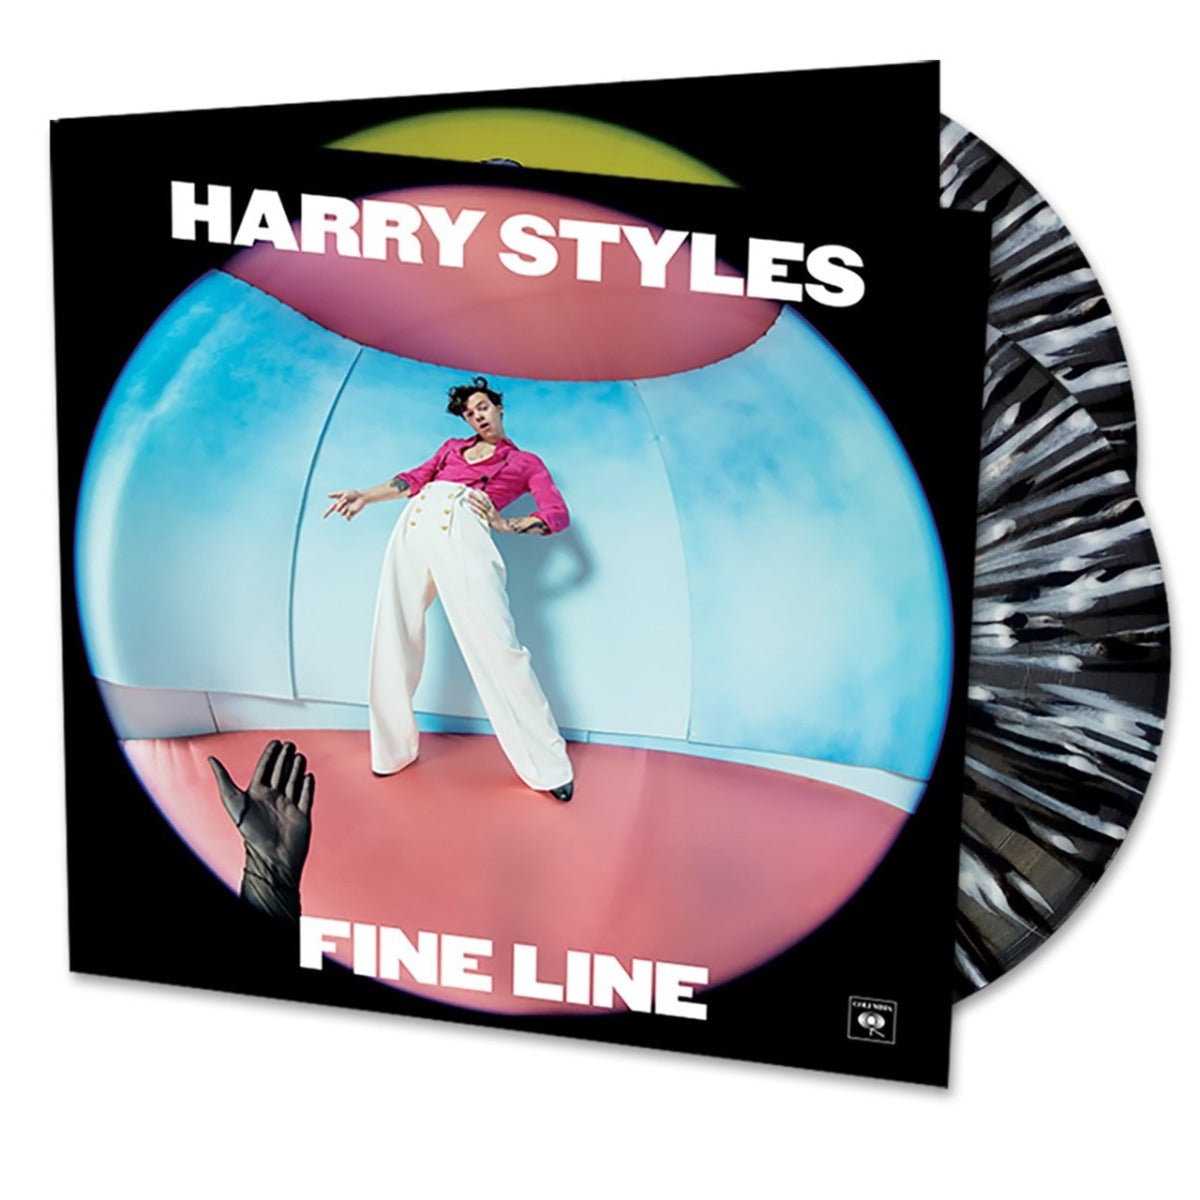 Harry Styles - Fine Line (Limited Edition, Black & White Splatter Vinyl, Gatefold Cover) (2 Lp's)